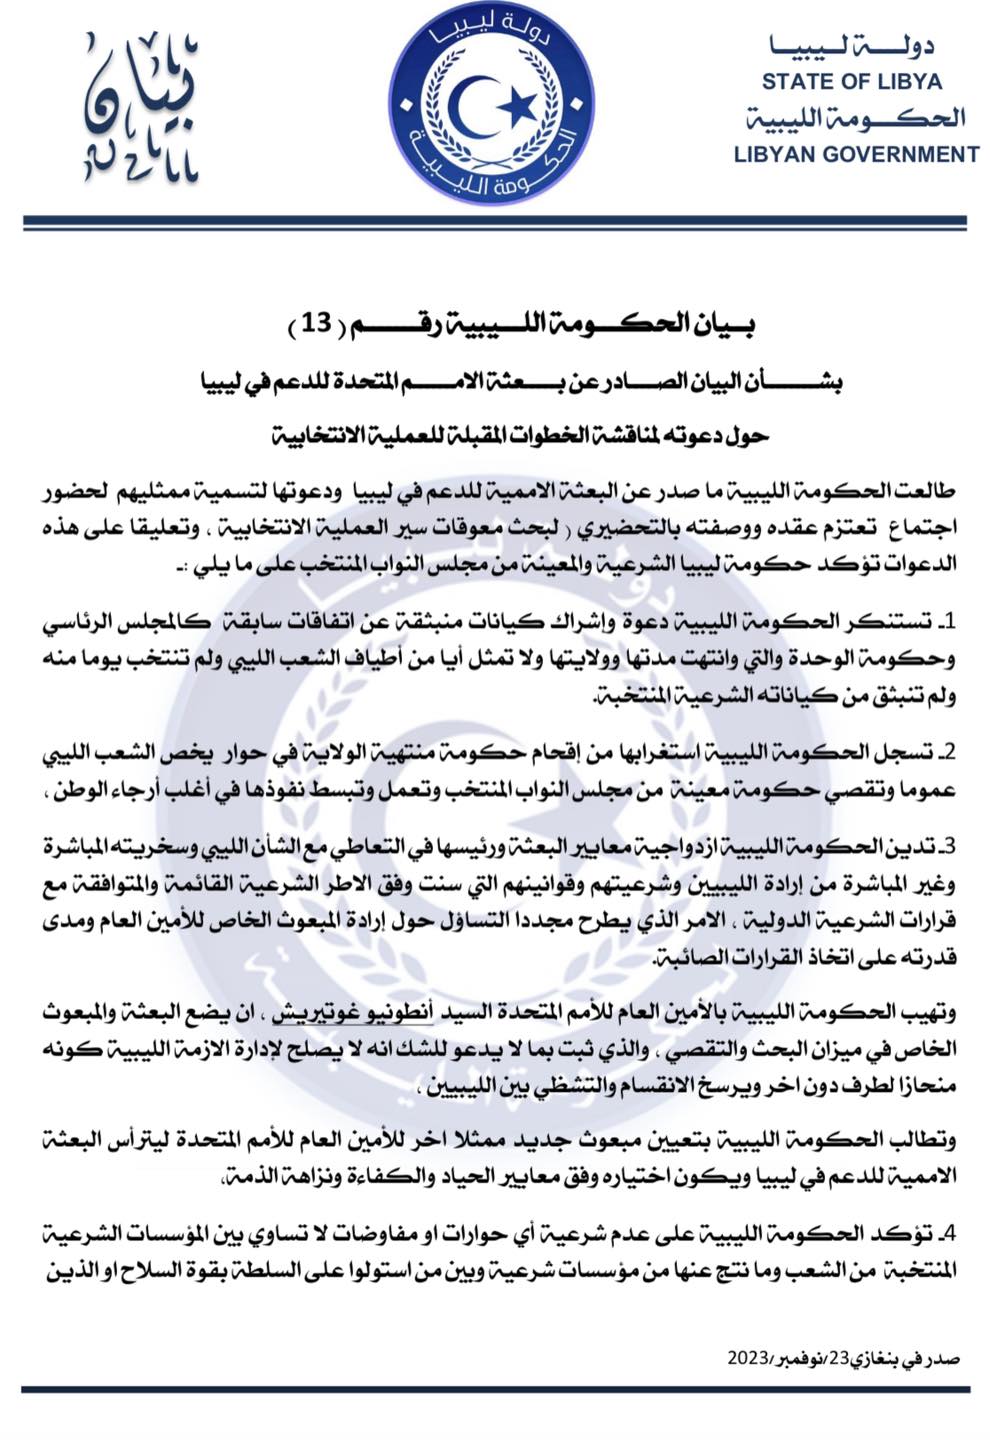 الحكومة الليبية تستنكر تجاهل باثيلي لها وترفض أي اجتماع ليست طرفا أساسيا فيه